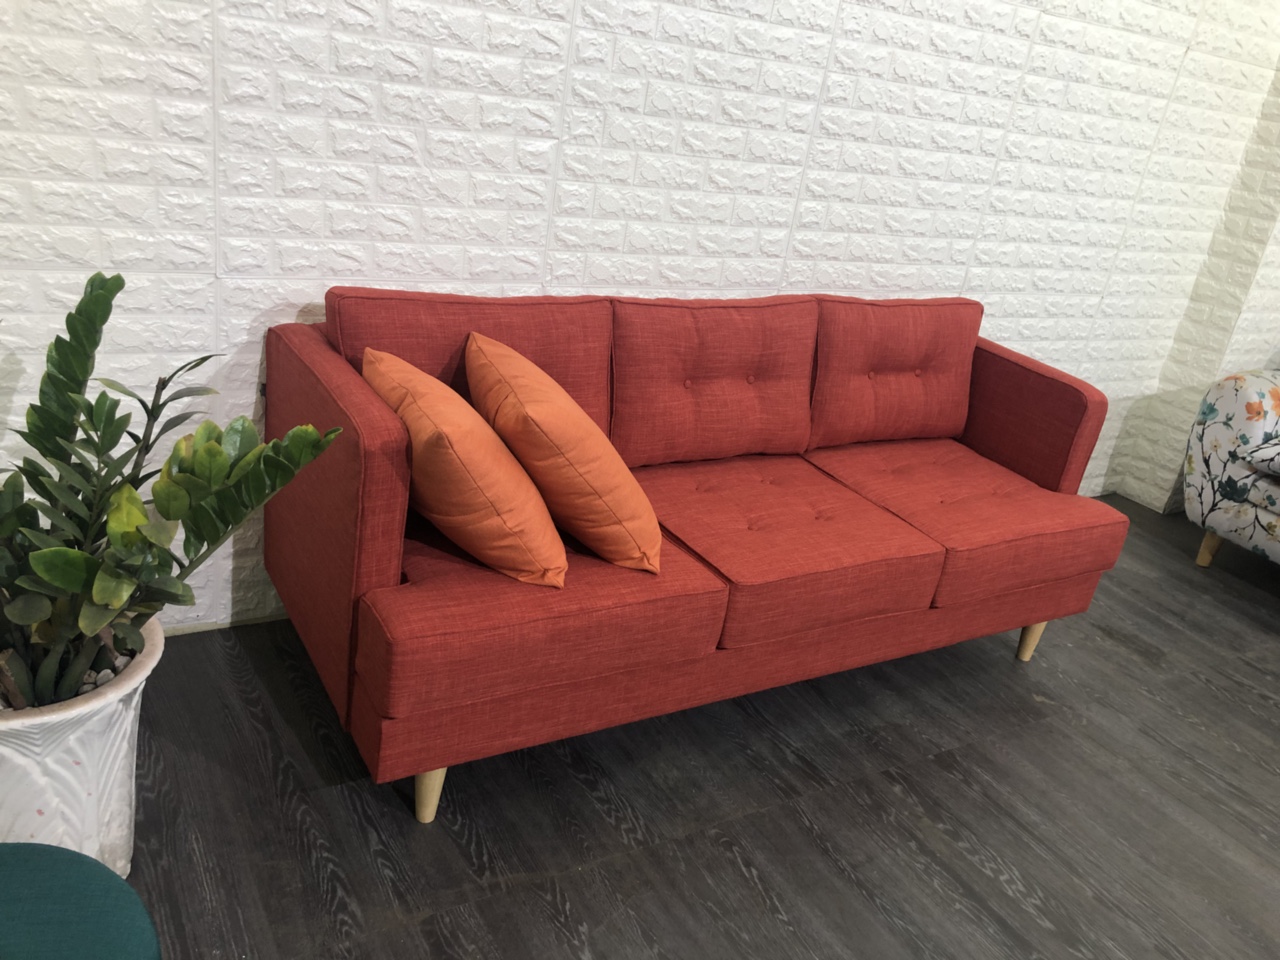 Sắc đỏ của sofa làm bừng sáng không gian nhà bạn